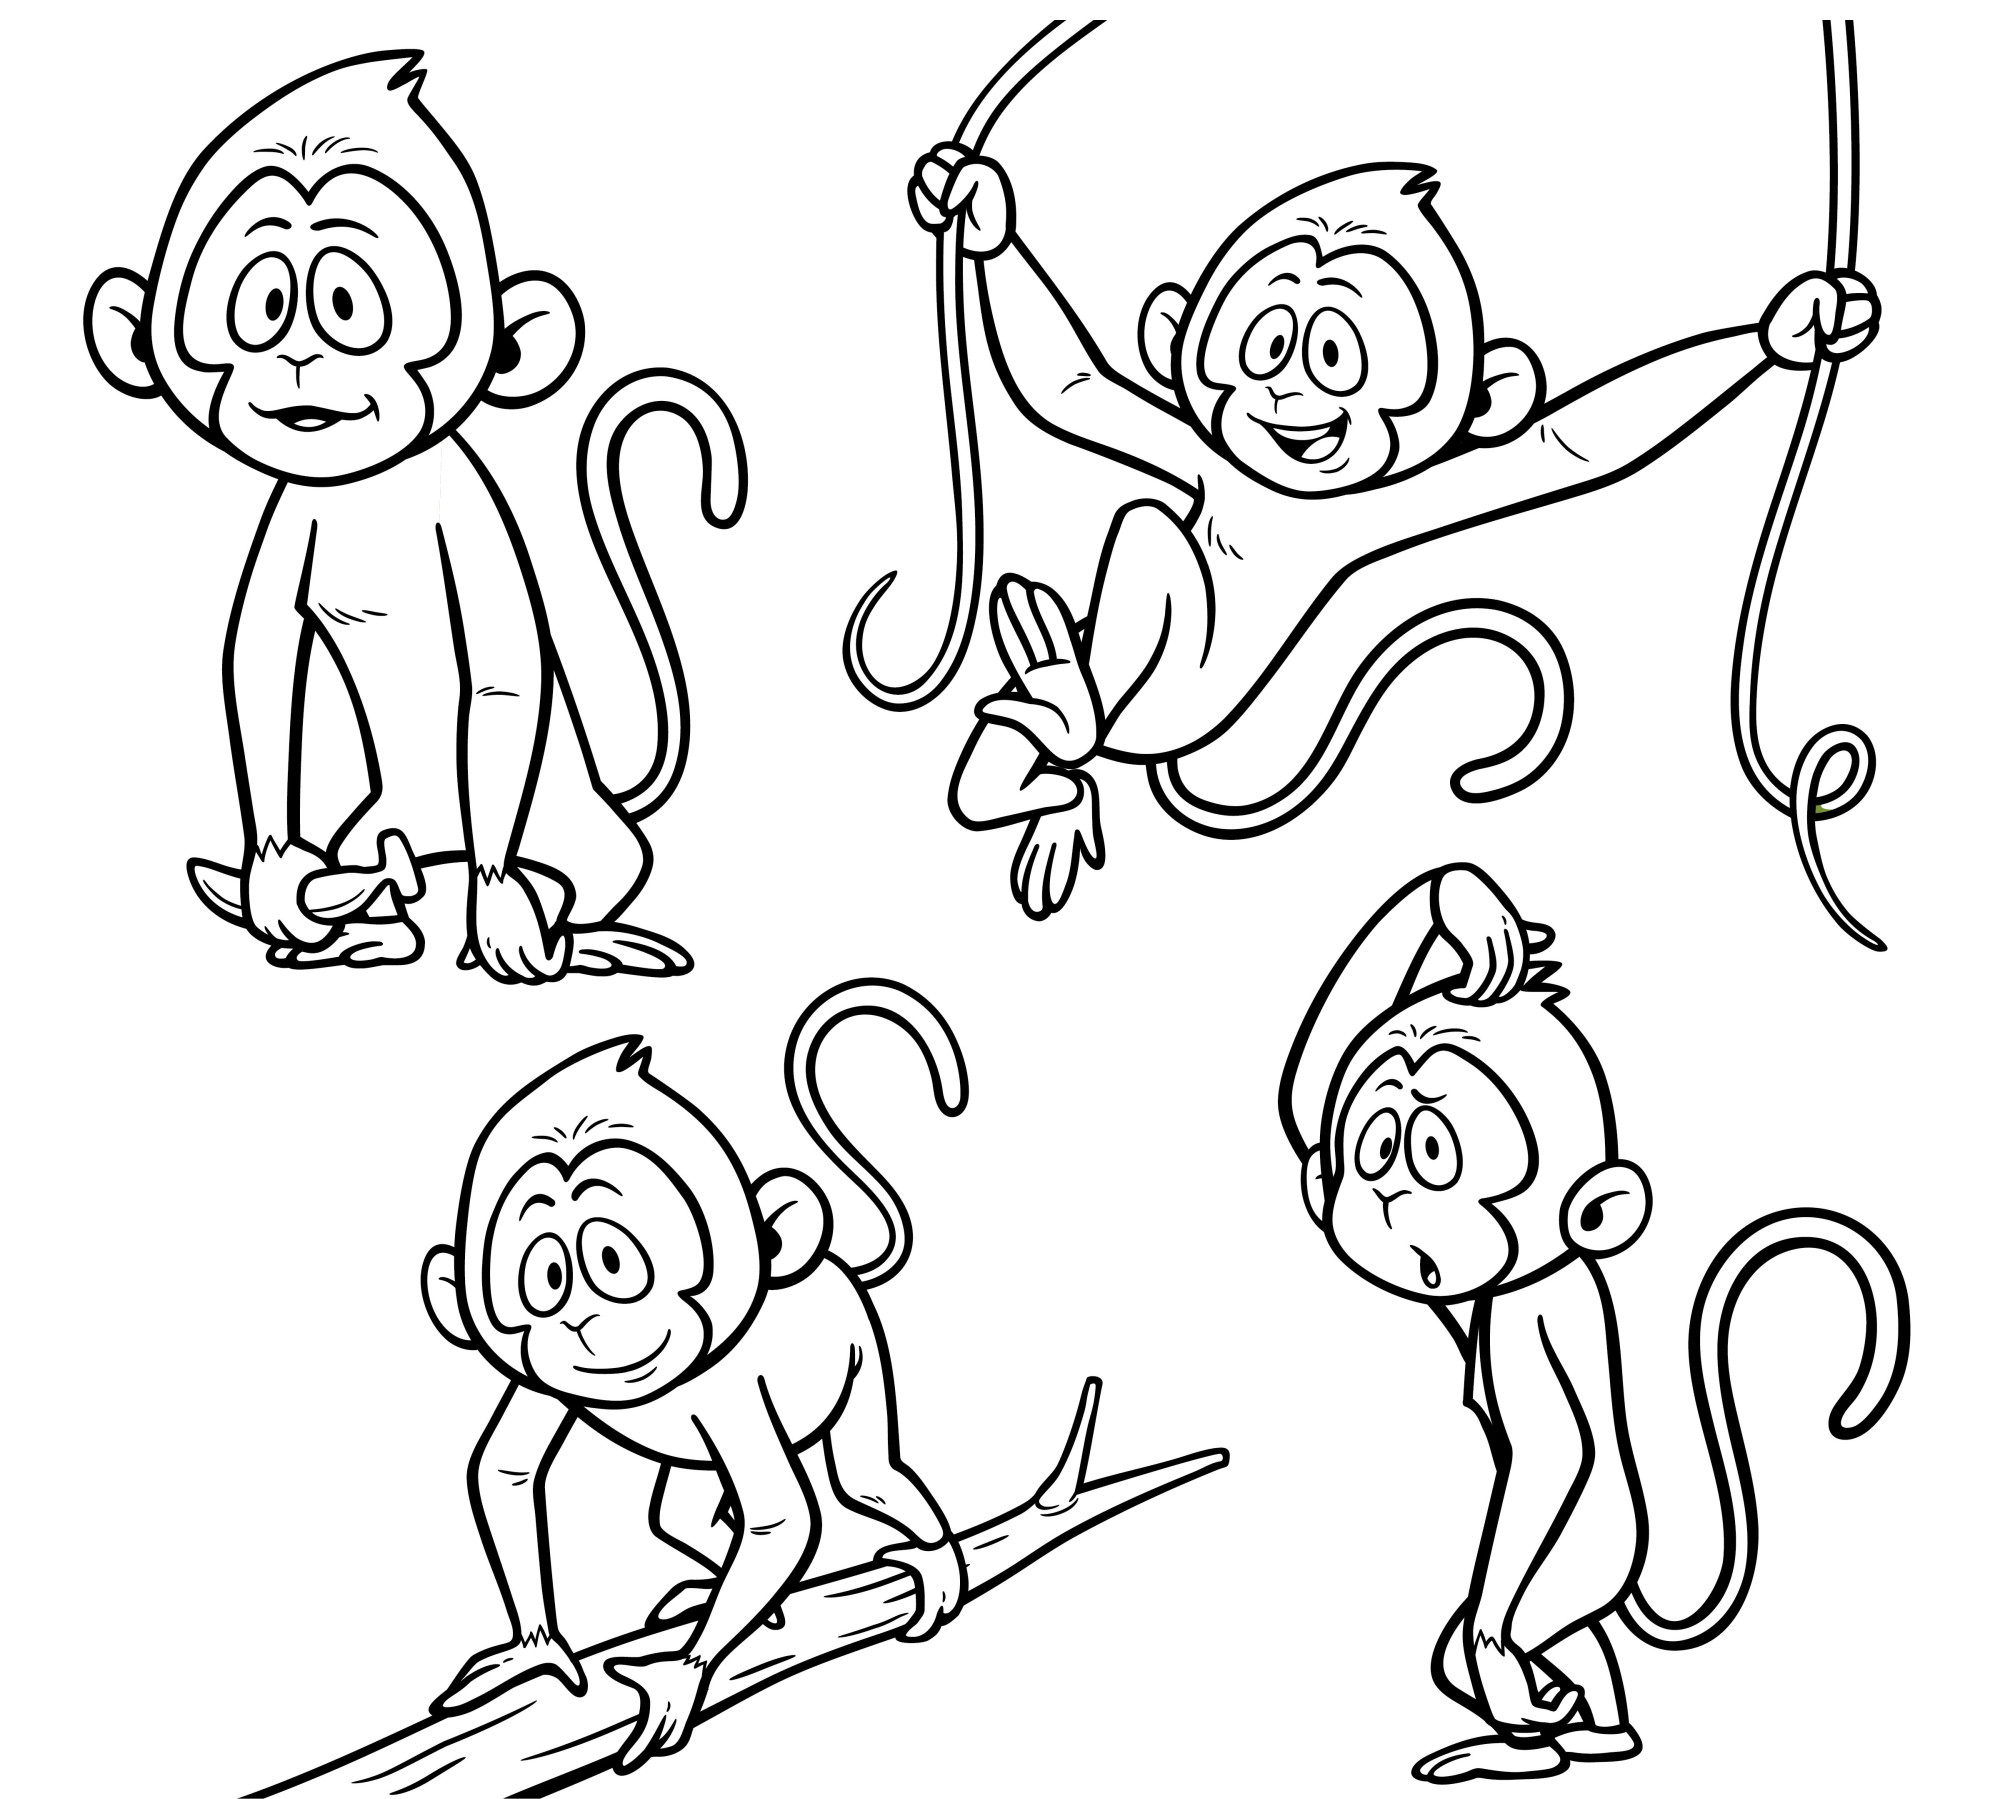 Раскраска для детей: набор картинок играющих обезьян